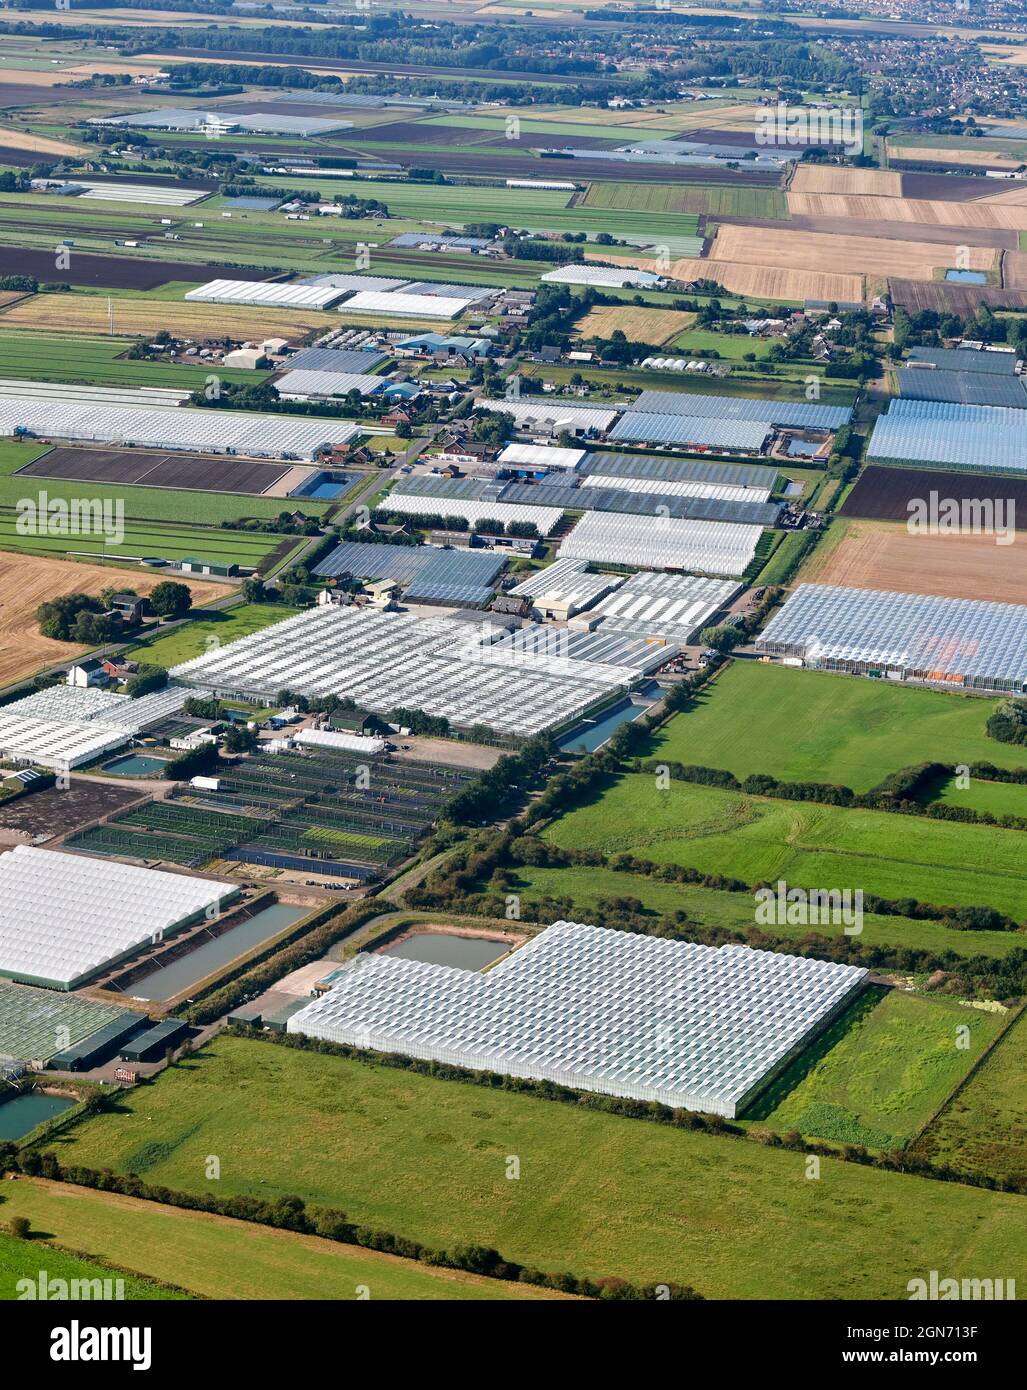 Patrons de champs sur le marché à haut rendement jardinage de terres agricoles près de Hesketh Bank, West Lancashire, North West England, Royaume-Uni Banque D'Images